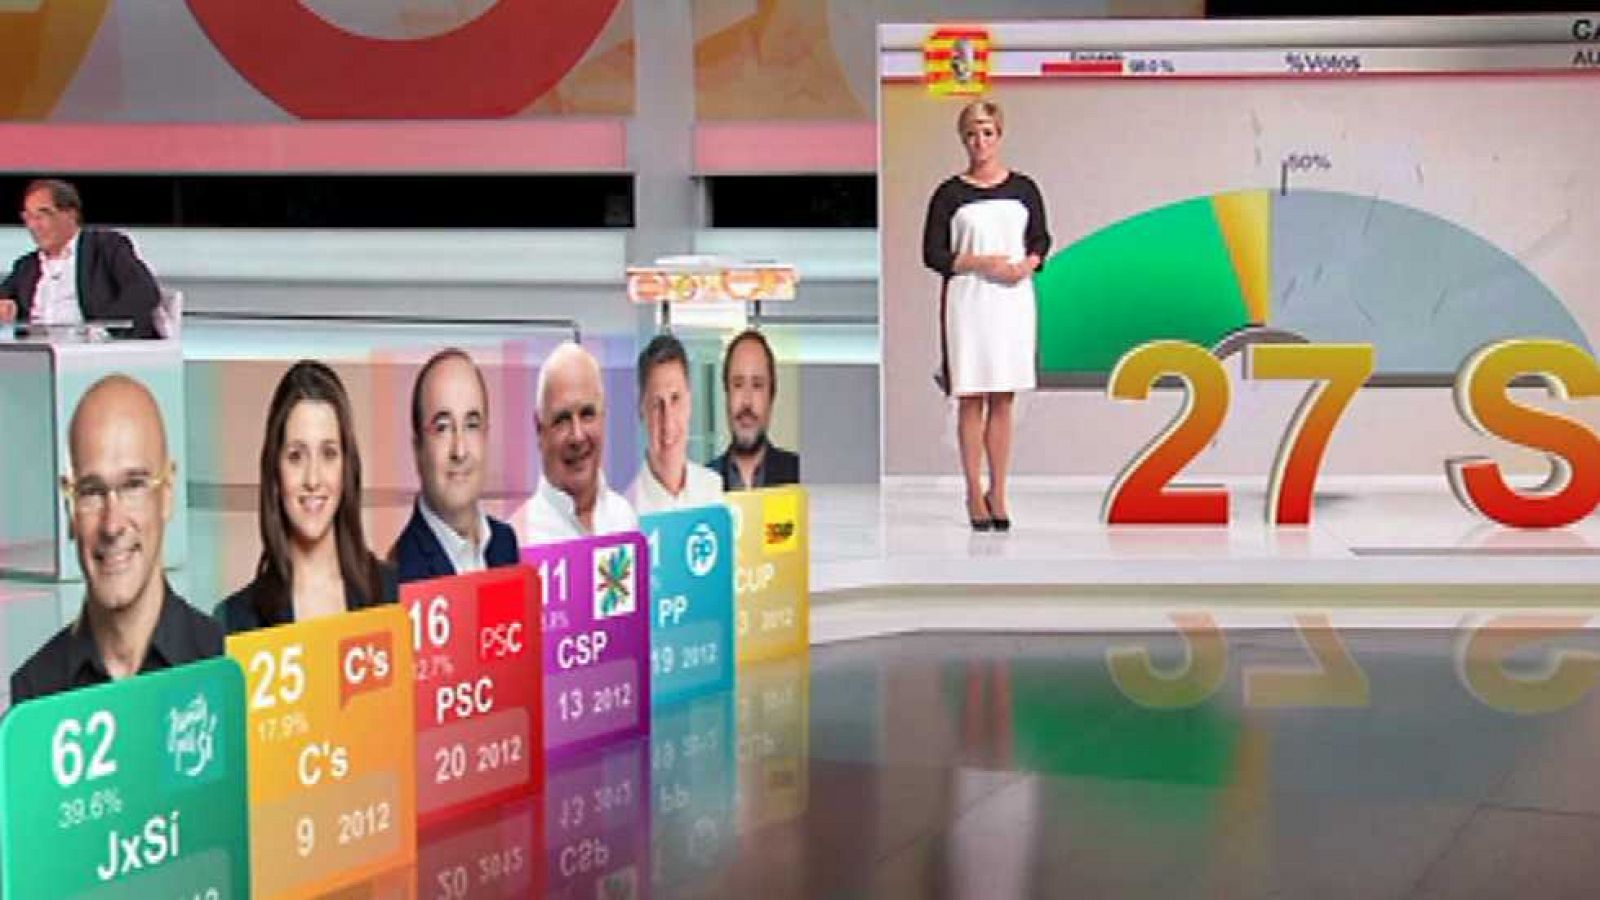 Especiales Informativos - Especial Noche electoral: Elecciones Cataluña 2015